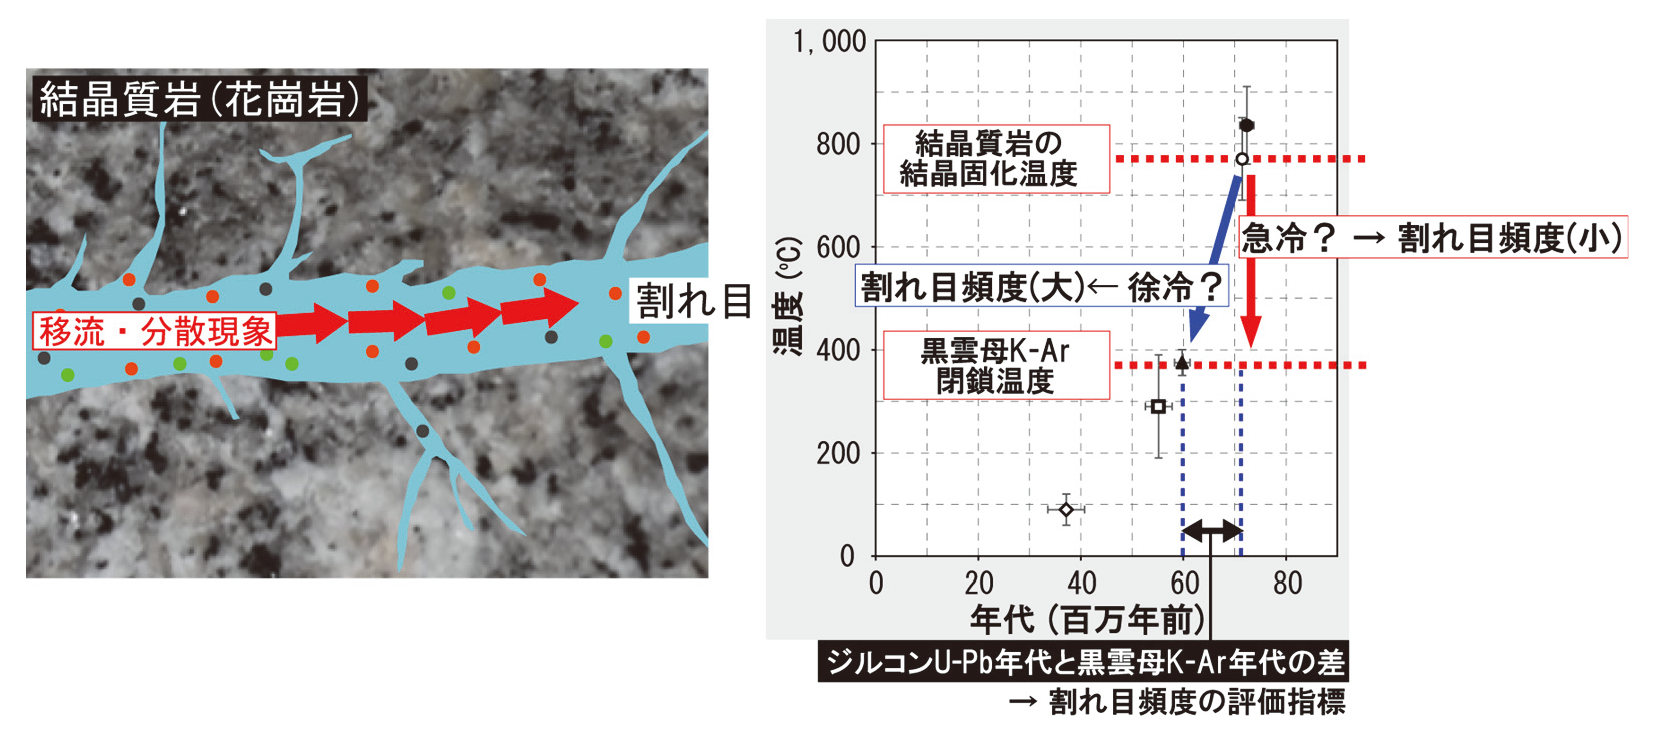 結晶質岩（花崗岩）内の割れ目における地下水・物質移動の概念図（左）及び，温度時間履歴と形成される割れ目頻度との関係（右）の画像